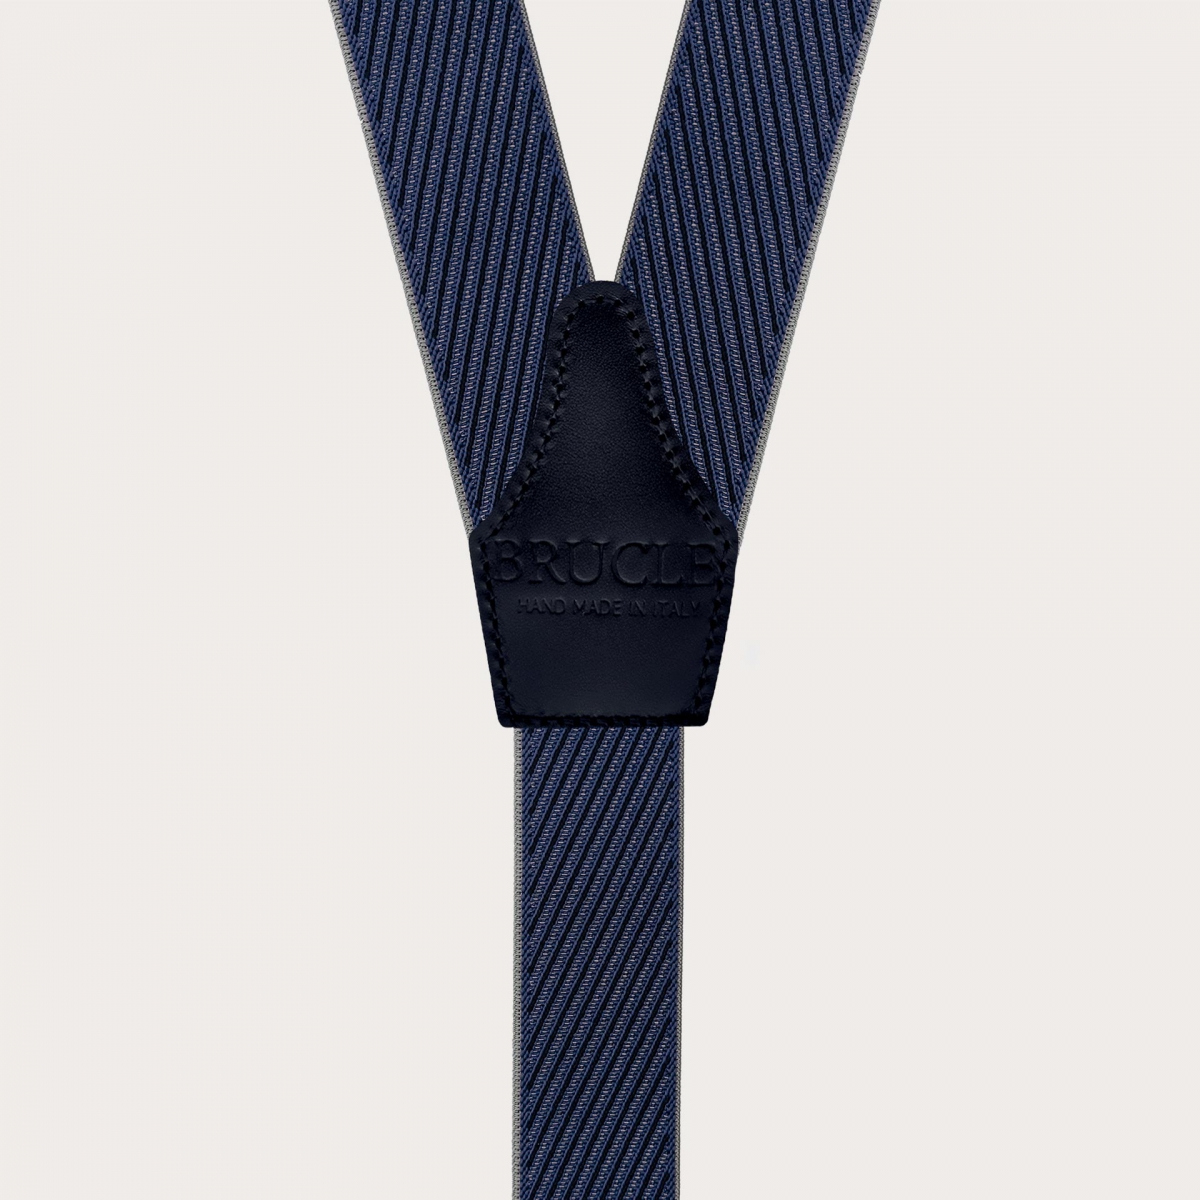 Elegante Hosenträger mit diagonalen Streifen in Blau, Grau und Marine, doppelte Verwendung